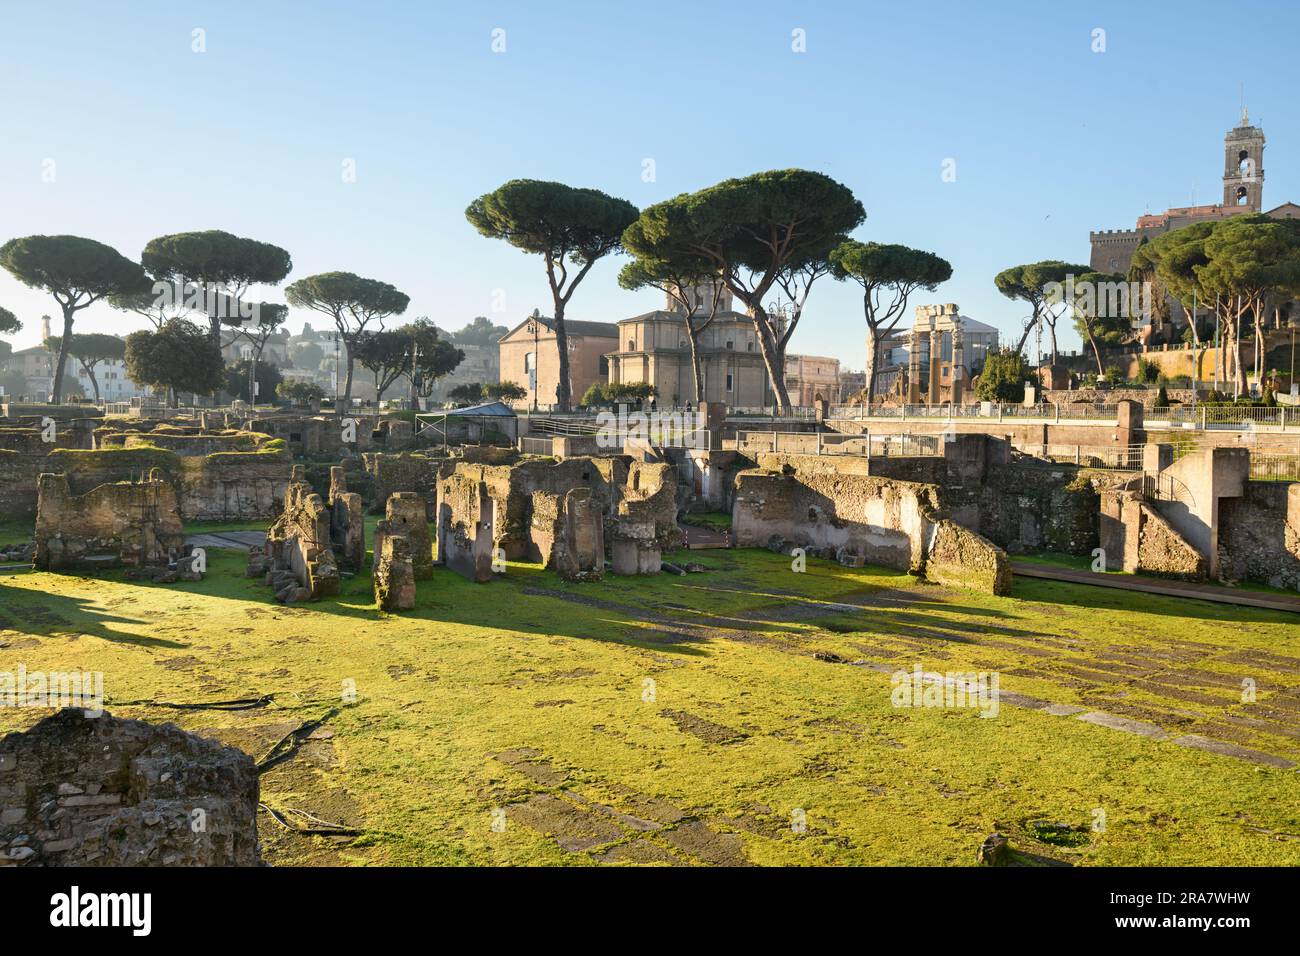 Ruines du Forum romain de Rome, Italie. Banque D'Images